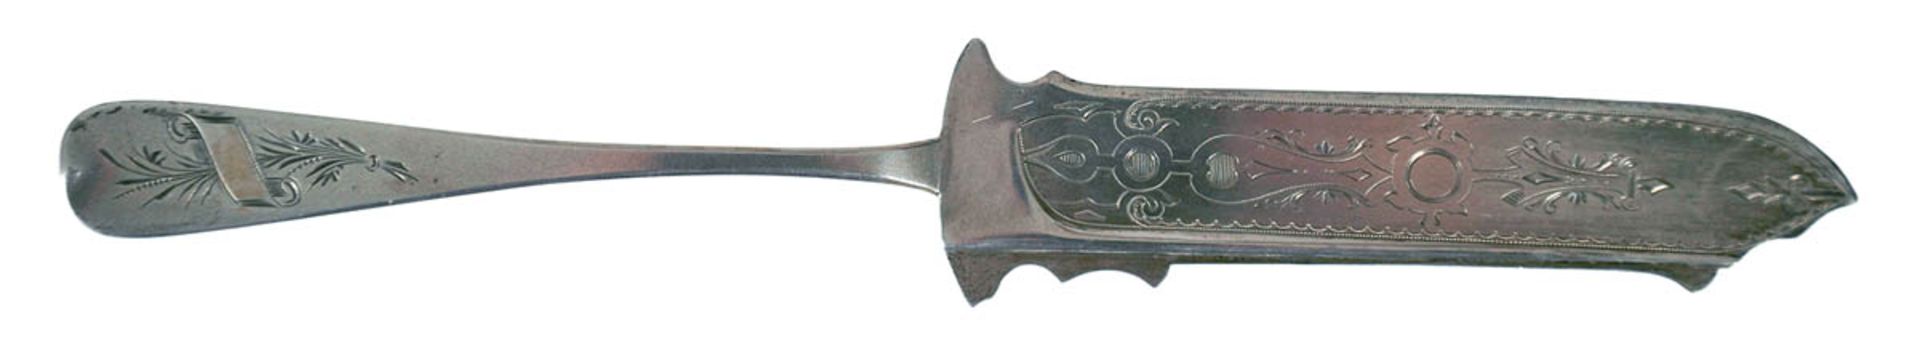 Historismus-Tortenmesser, 800er Silber, mit Ornamentdekor, 60 g, L. 28 cm